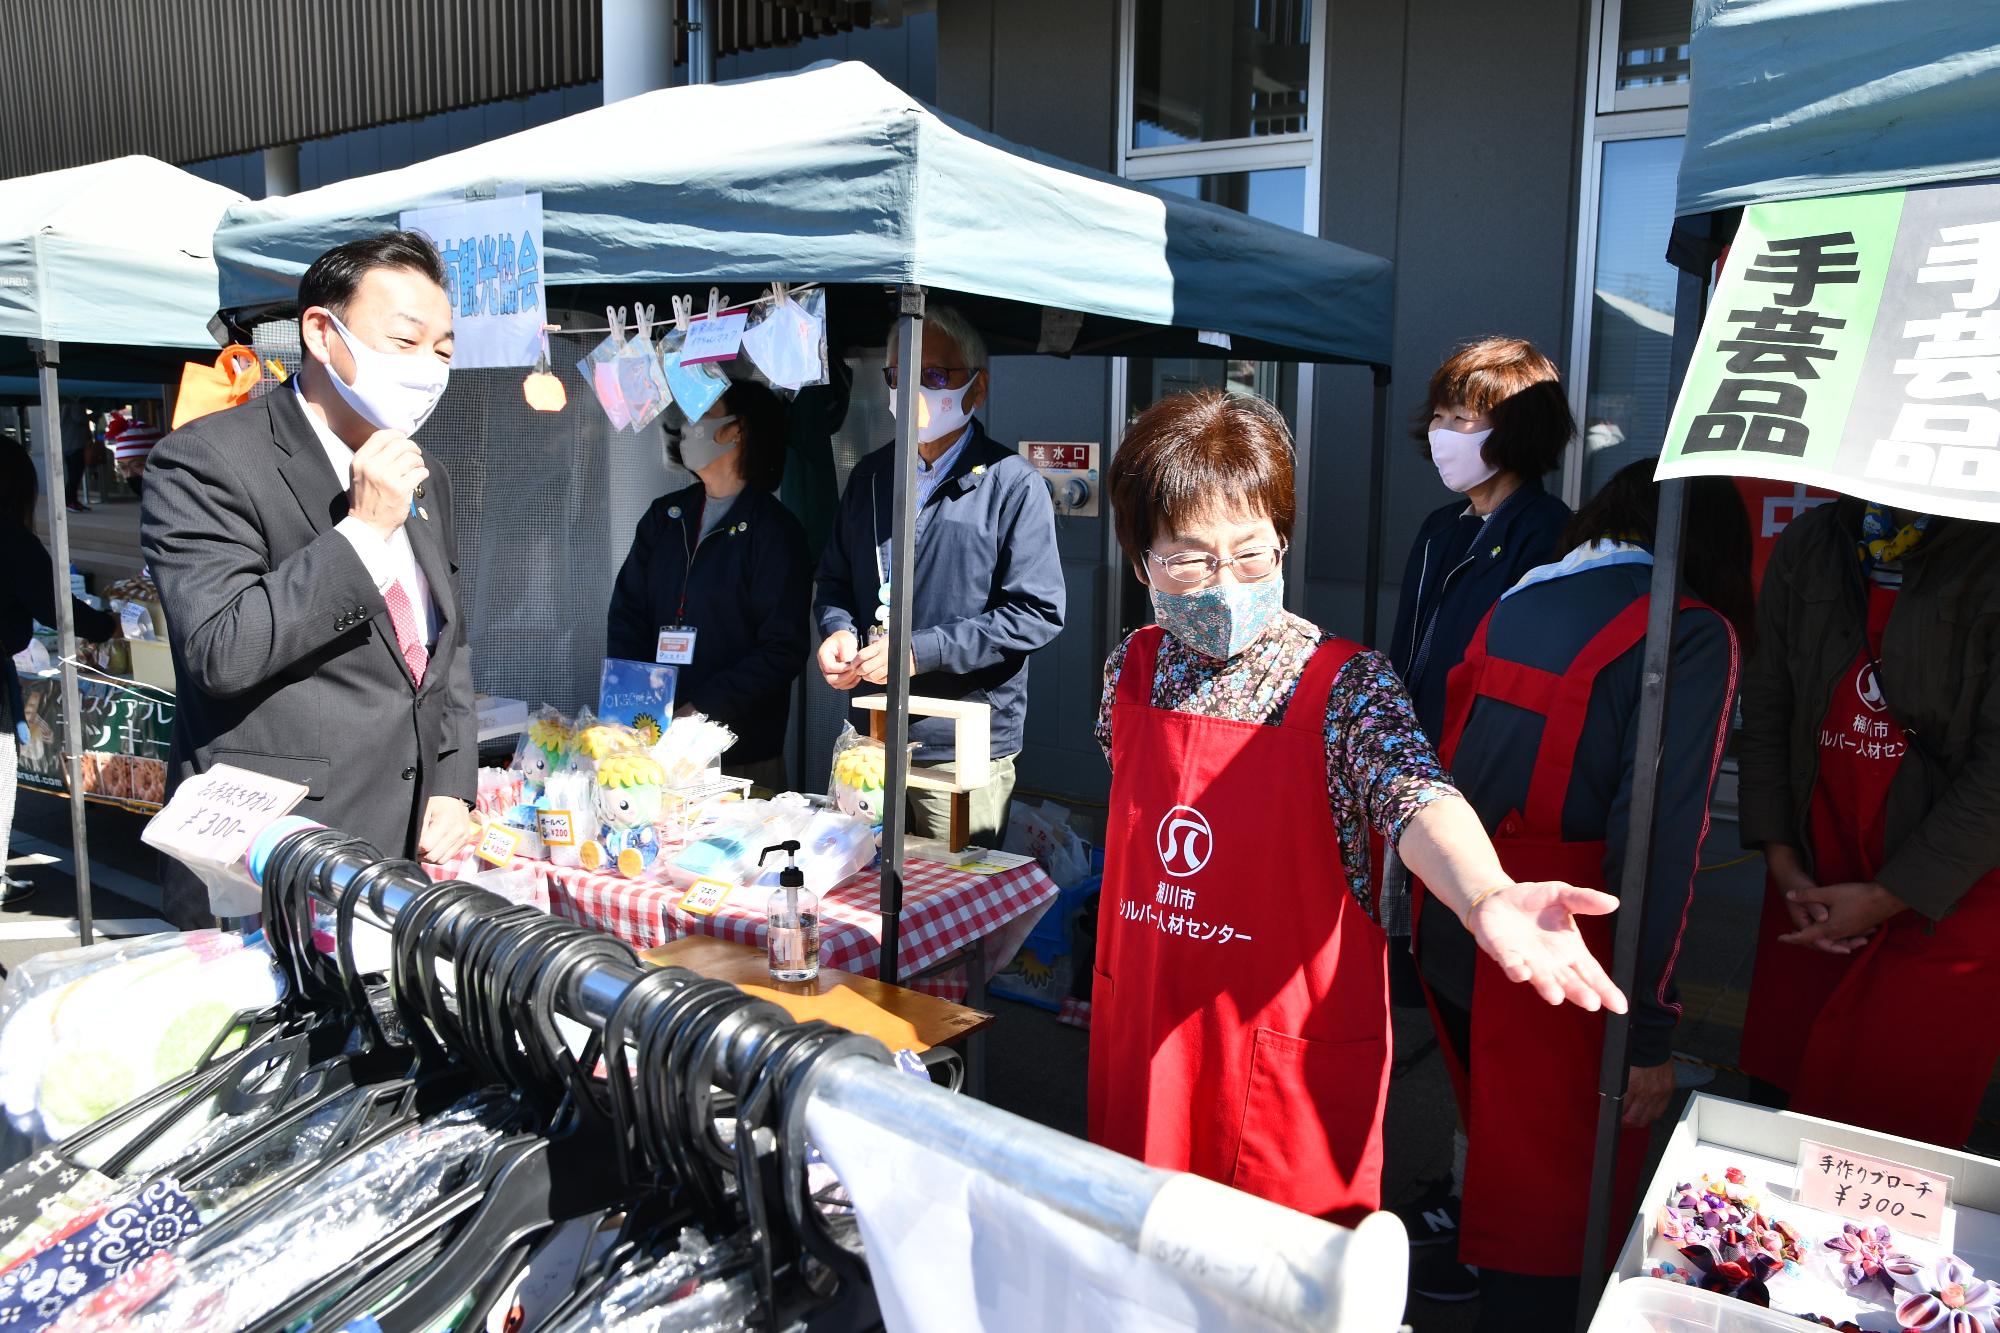 坂田コミュニティセンターで開催された「さかた”ぷち”マルシェ」で、出店の前でお店の人と市長が話している様子